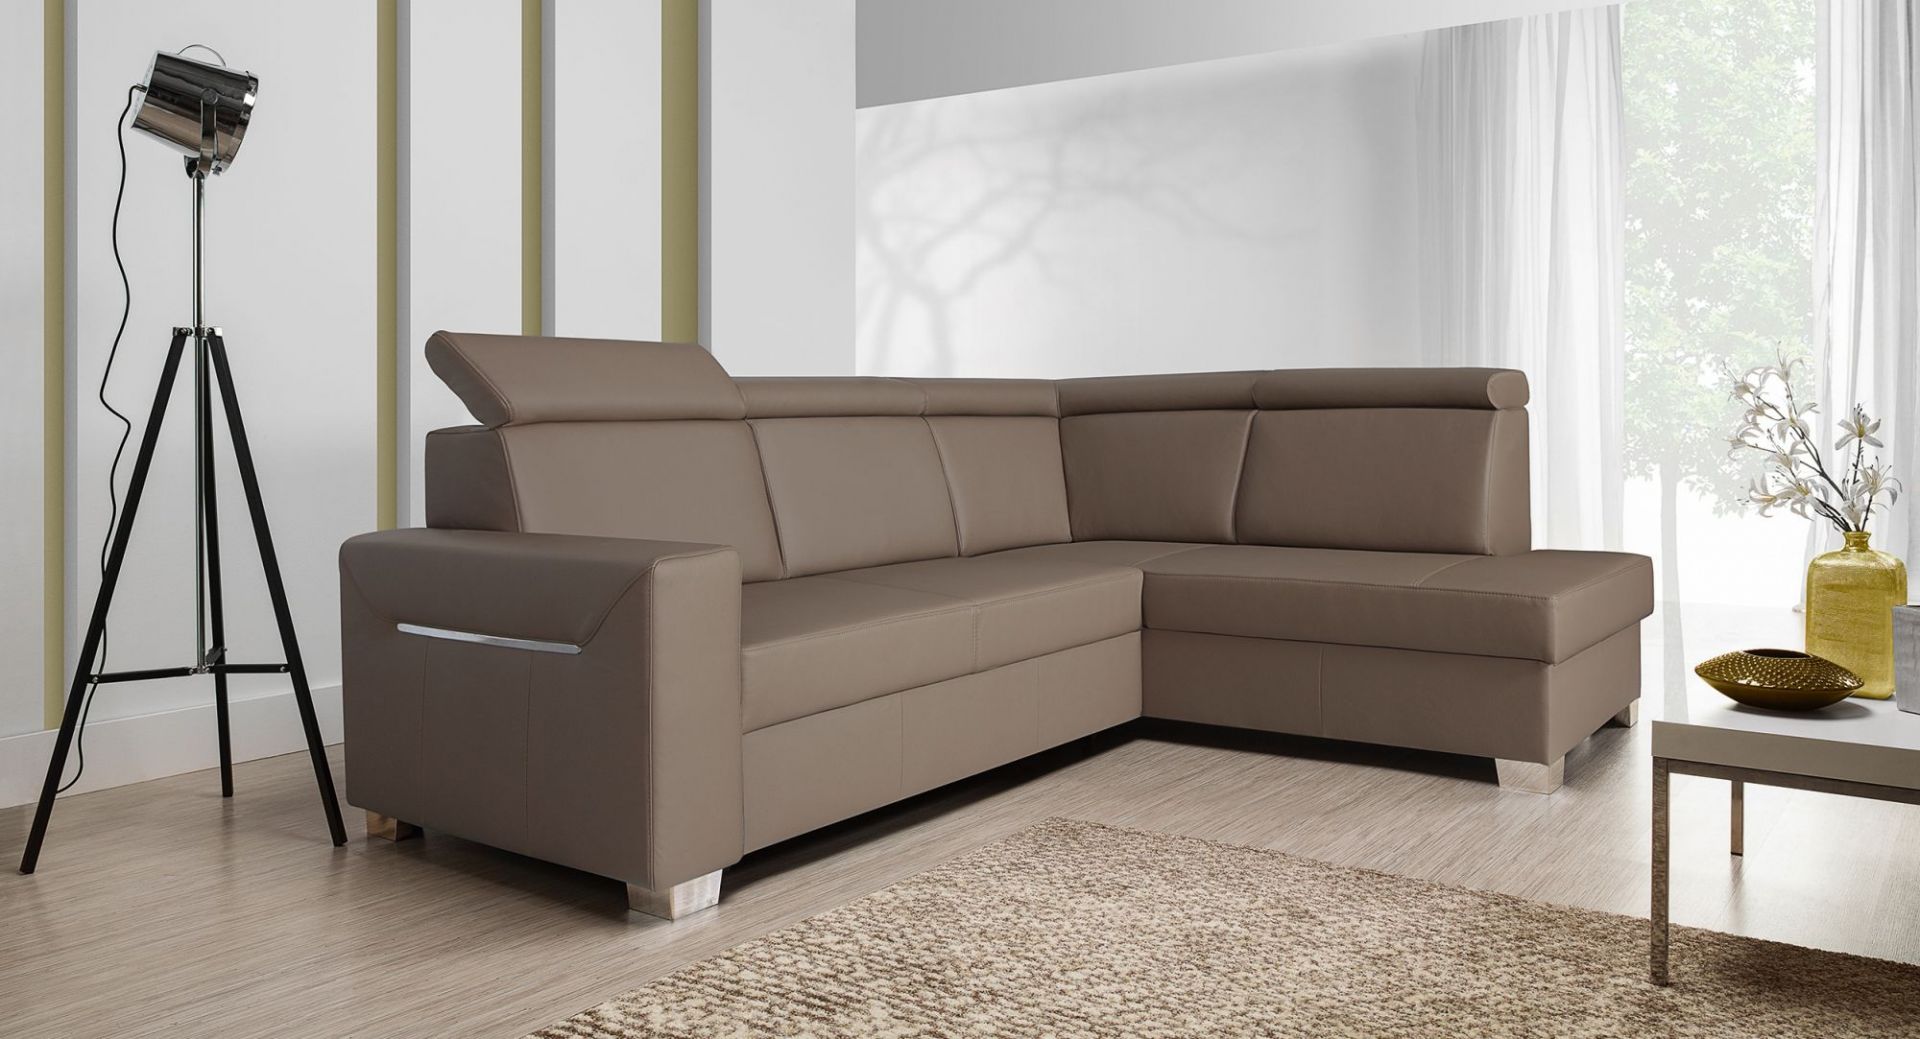 Sofa Focus to proste, geometryczne kształty i funkcjonalność. Ozdobna, chromowana listwa umieszczona na boku mebla podkreśla jego nowoczesny wygląd. Ruchome zagłówki i funkcja spania podnoszą wygodę codziennego użytkowania. Fot. Wajnert Meble